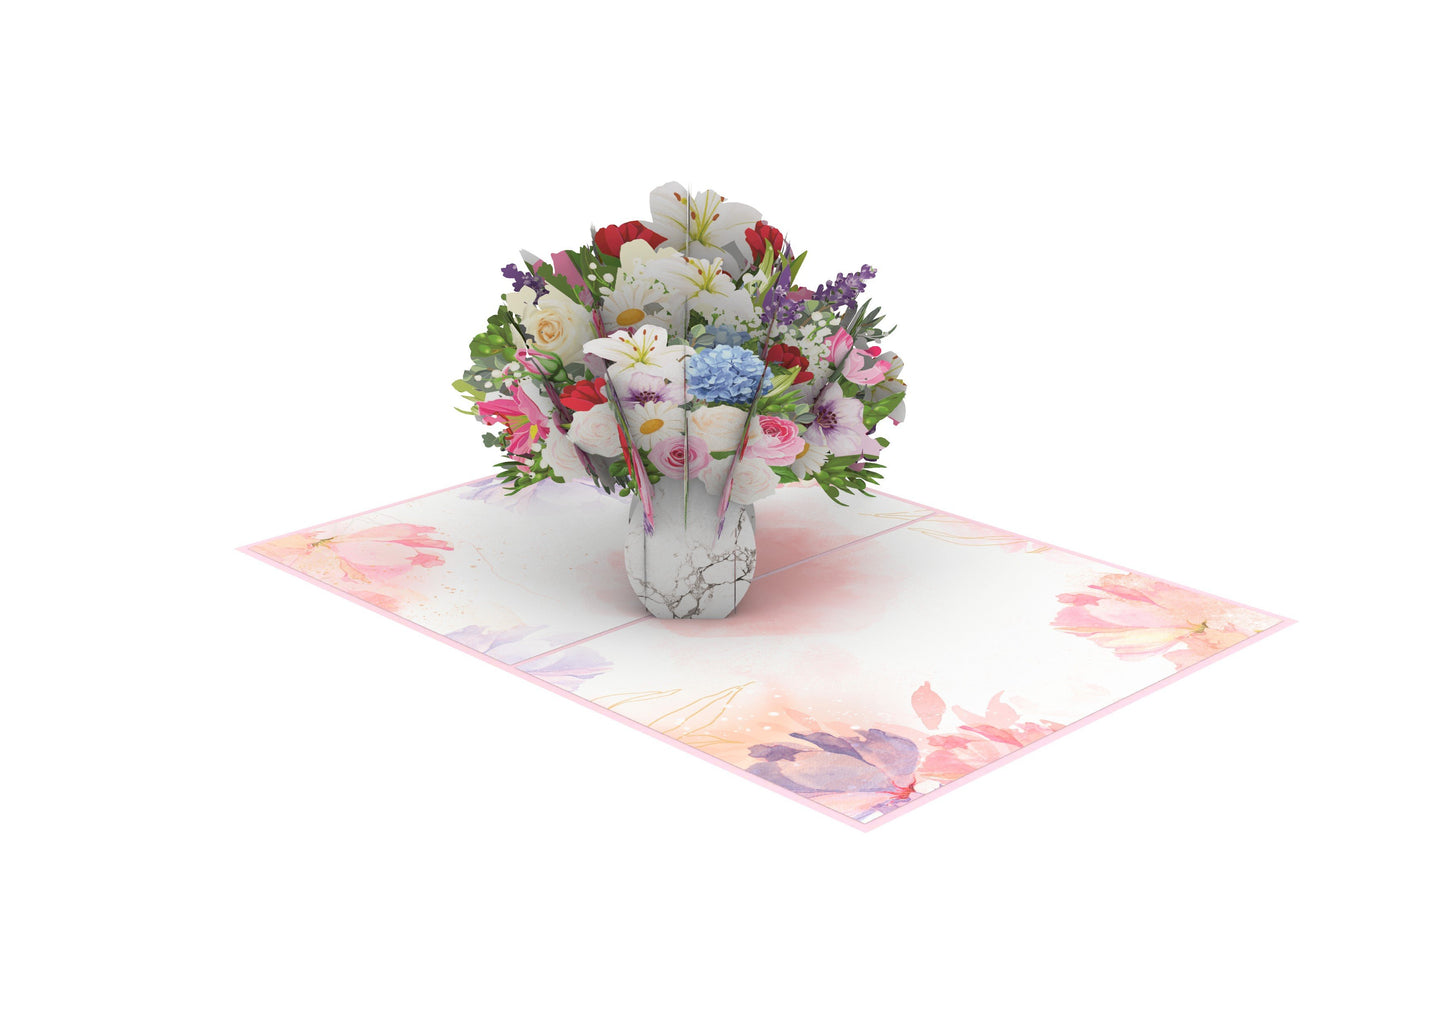 Floral Vase Pop-Up Card